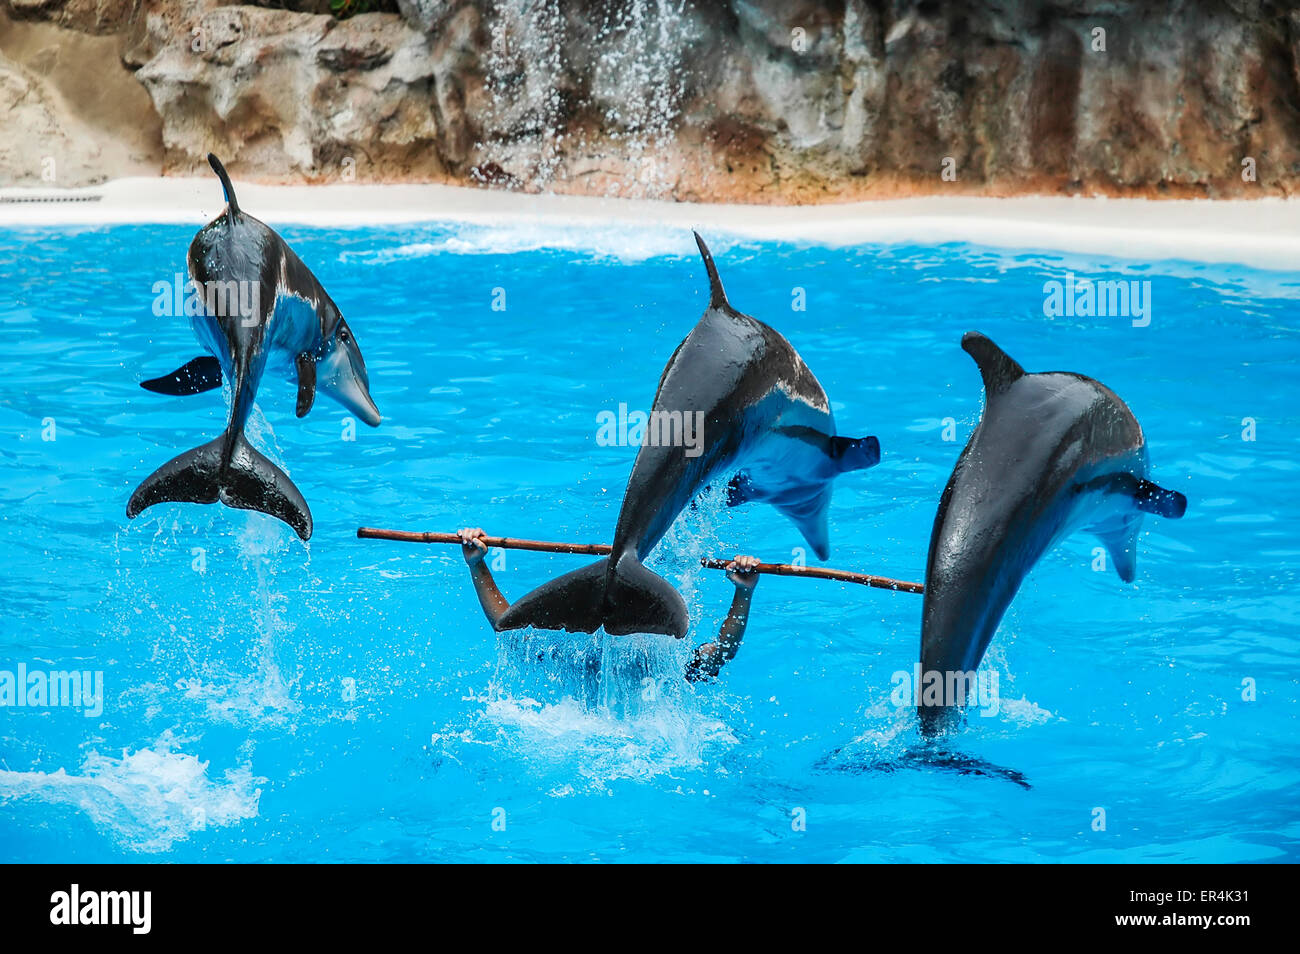 Trois dauphins au cours d'un spectacle aquatique Banque D'Images